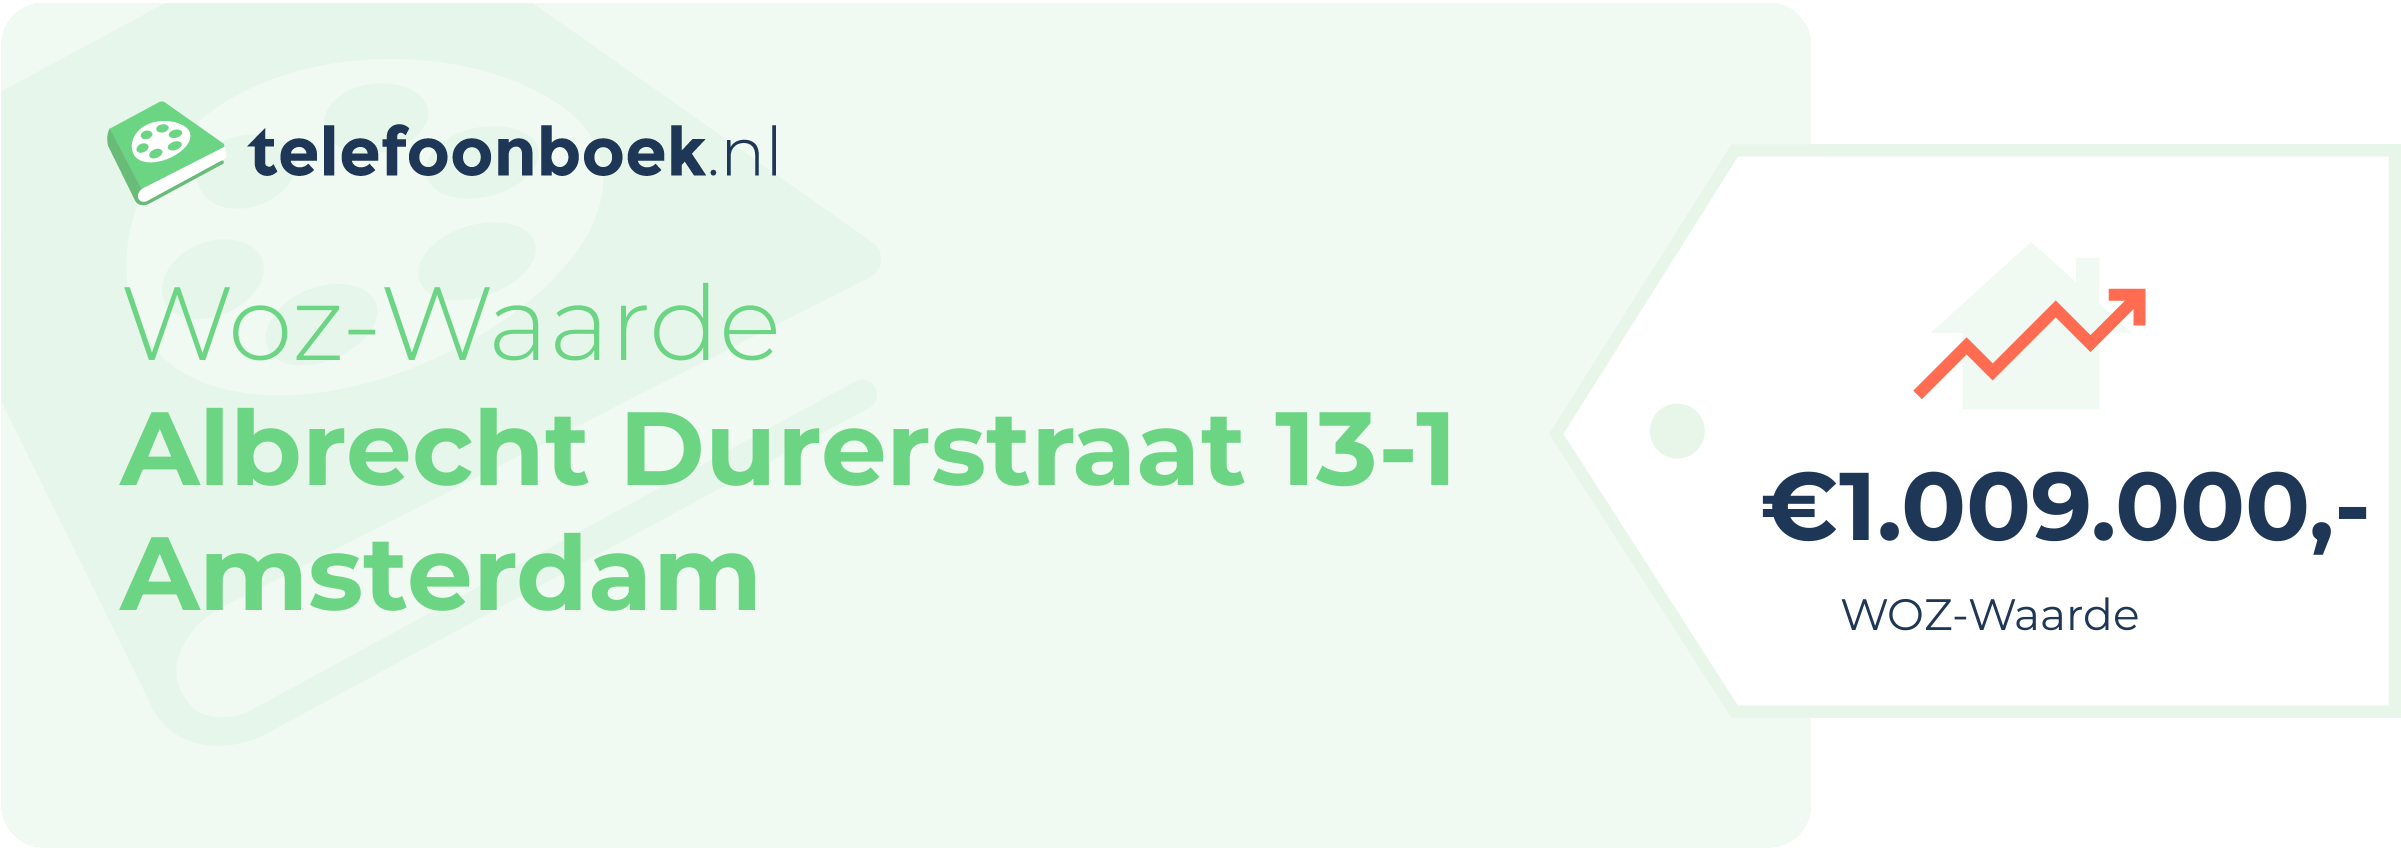 WOZ-waarde Albrecht Durerstraat 13-1 Amsterdam